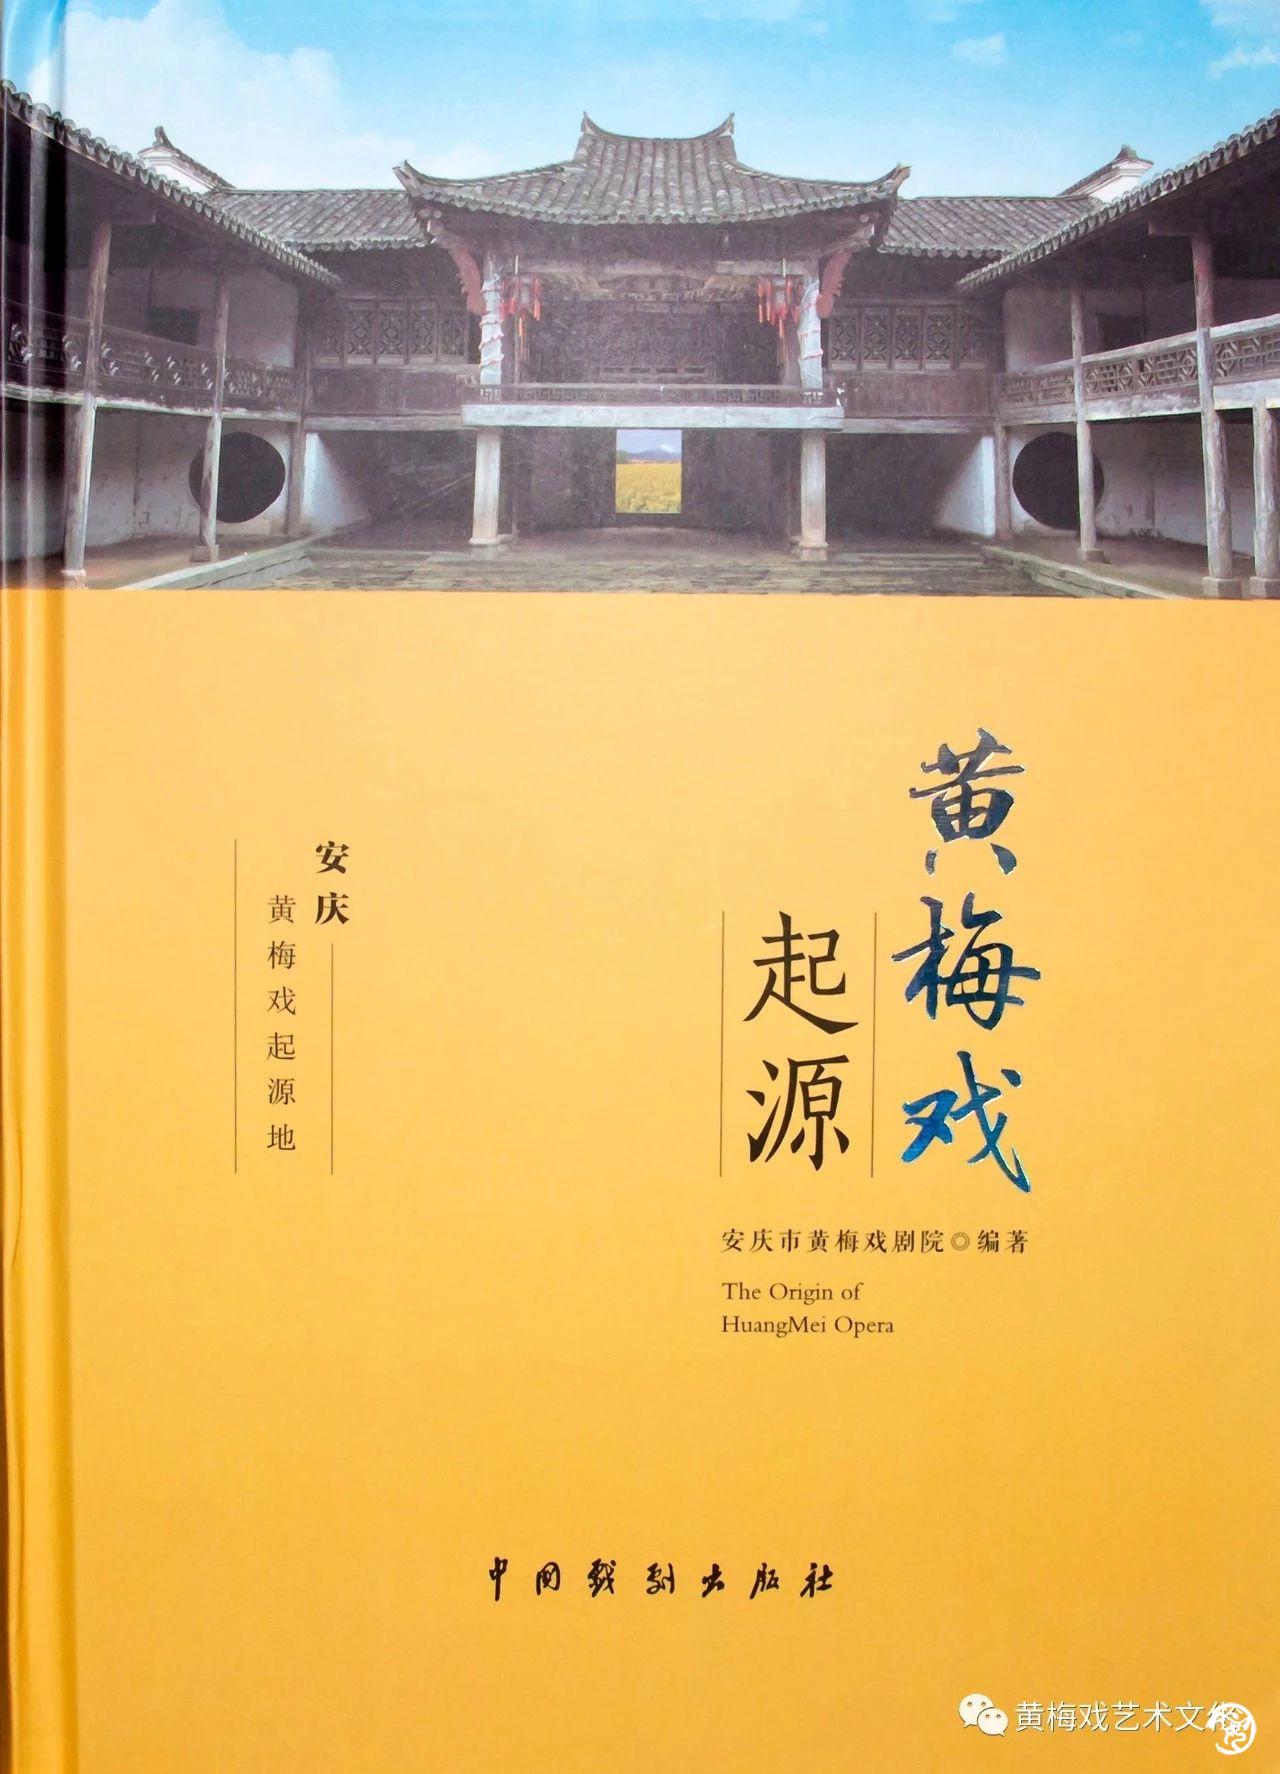 《黄梅戏起源》专著由中国戏剧出版社出版发